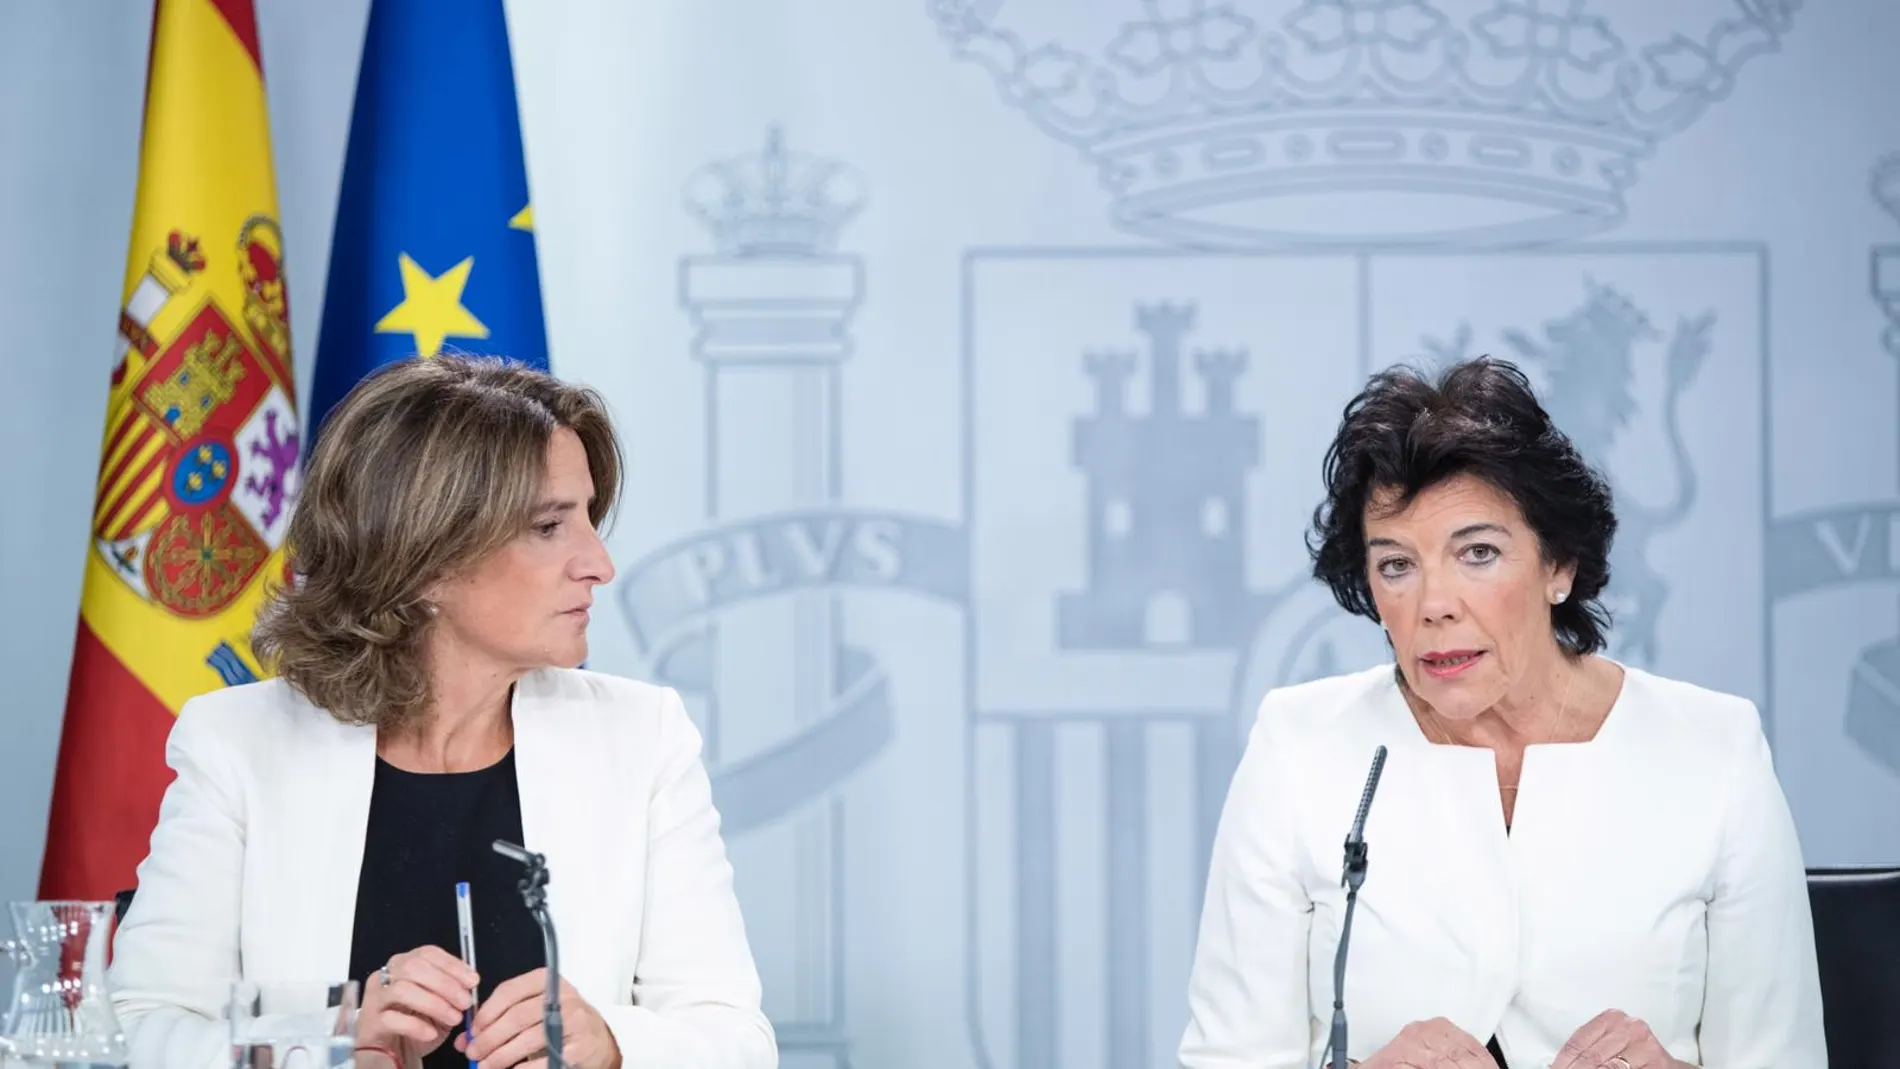 La portavoz del Gobierno, Isabel Celaa, junto a Teresa Ribera, ministra de Energía, durante la rueda de prensa tras el Consejo de Ministros